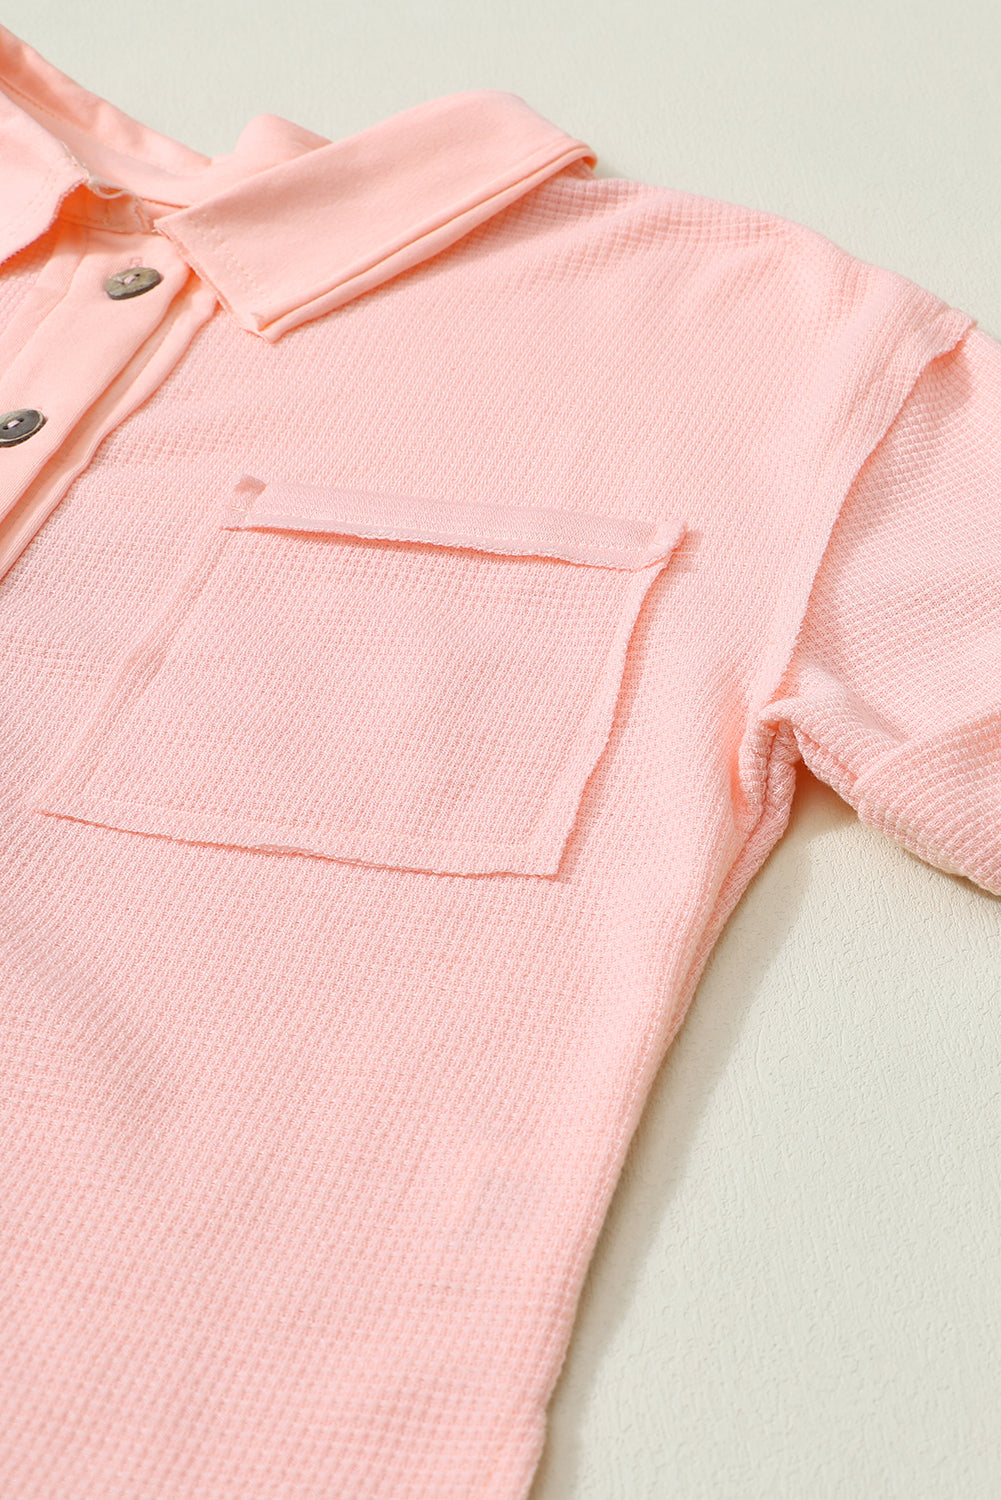 Chemise boutonnée à manches courtes en tricot gaufré rose délavé à l'acide